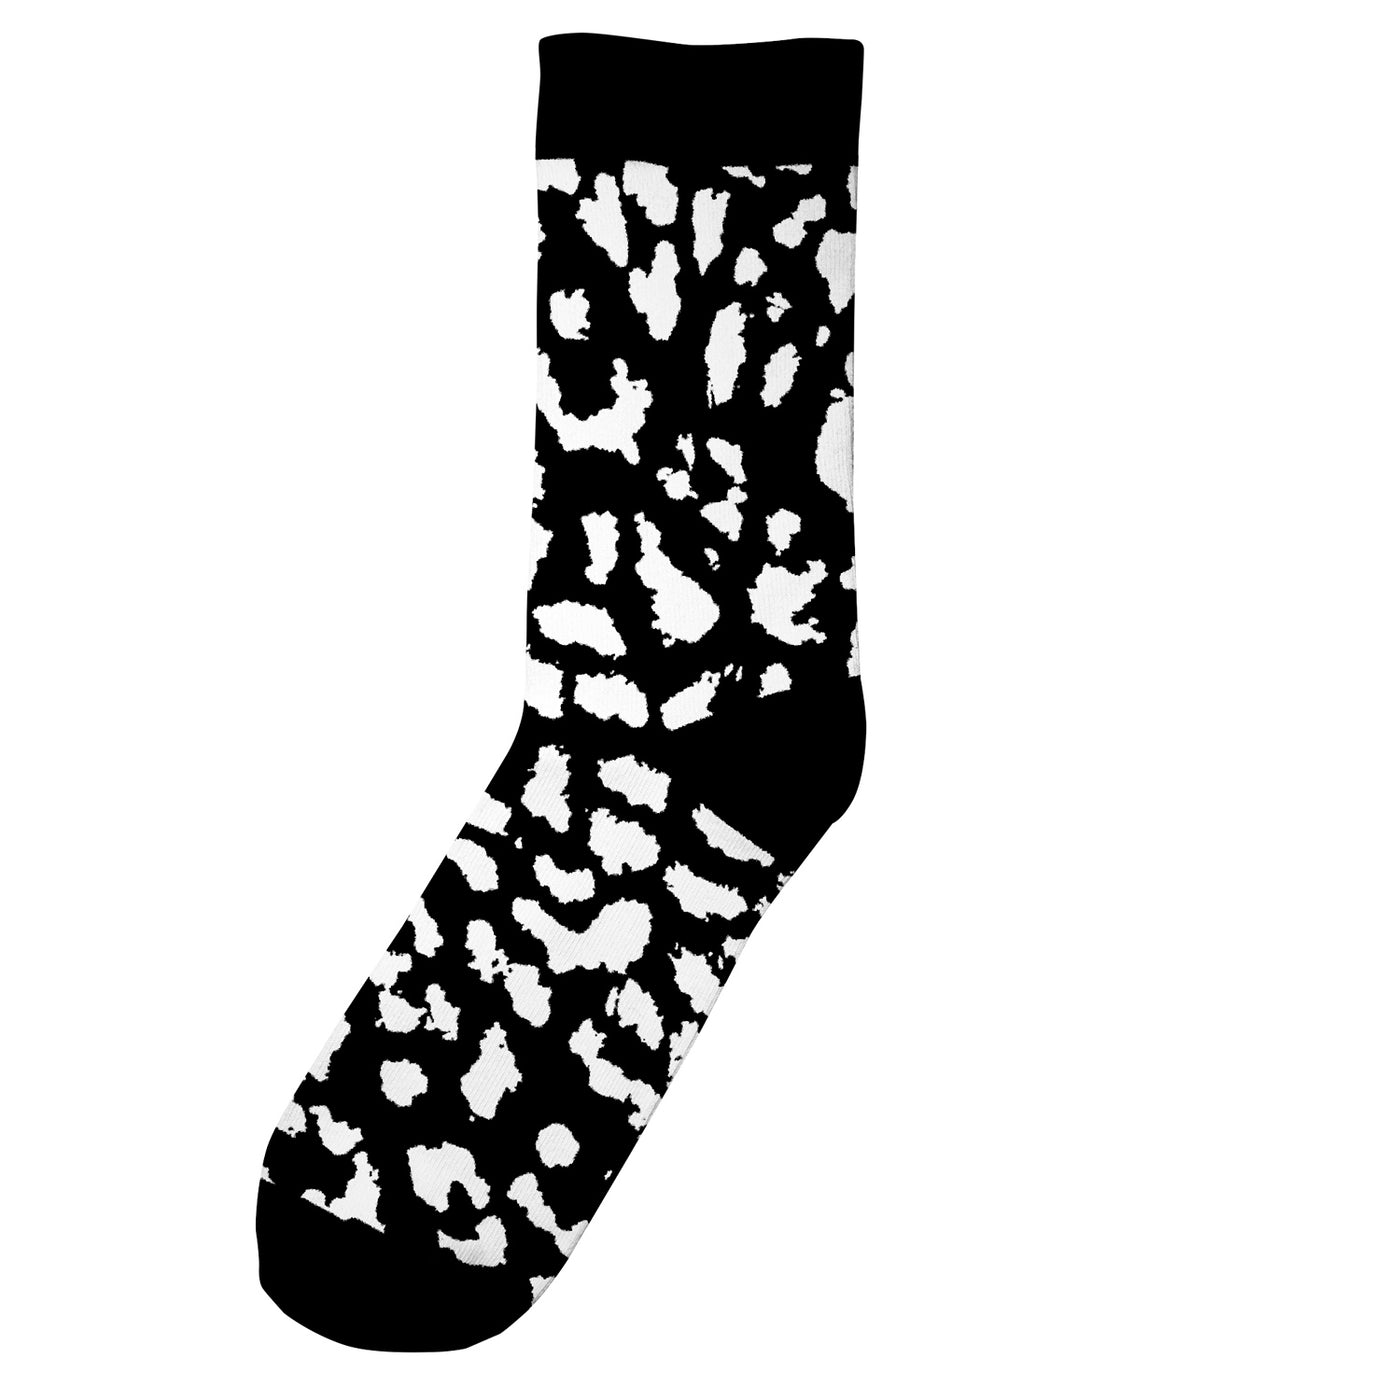 Dedicated - Socks Sigtuna Lynx Black. Socken. Nachhaltige Kleidung für Männer. Bio, fair & vegan. green.in.pieces